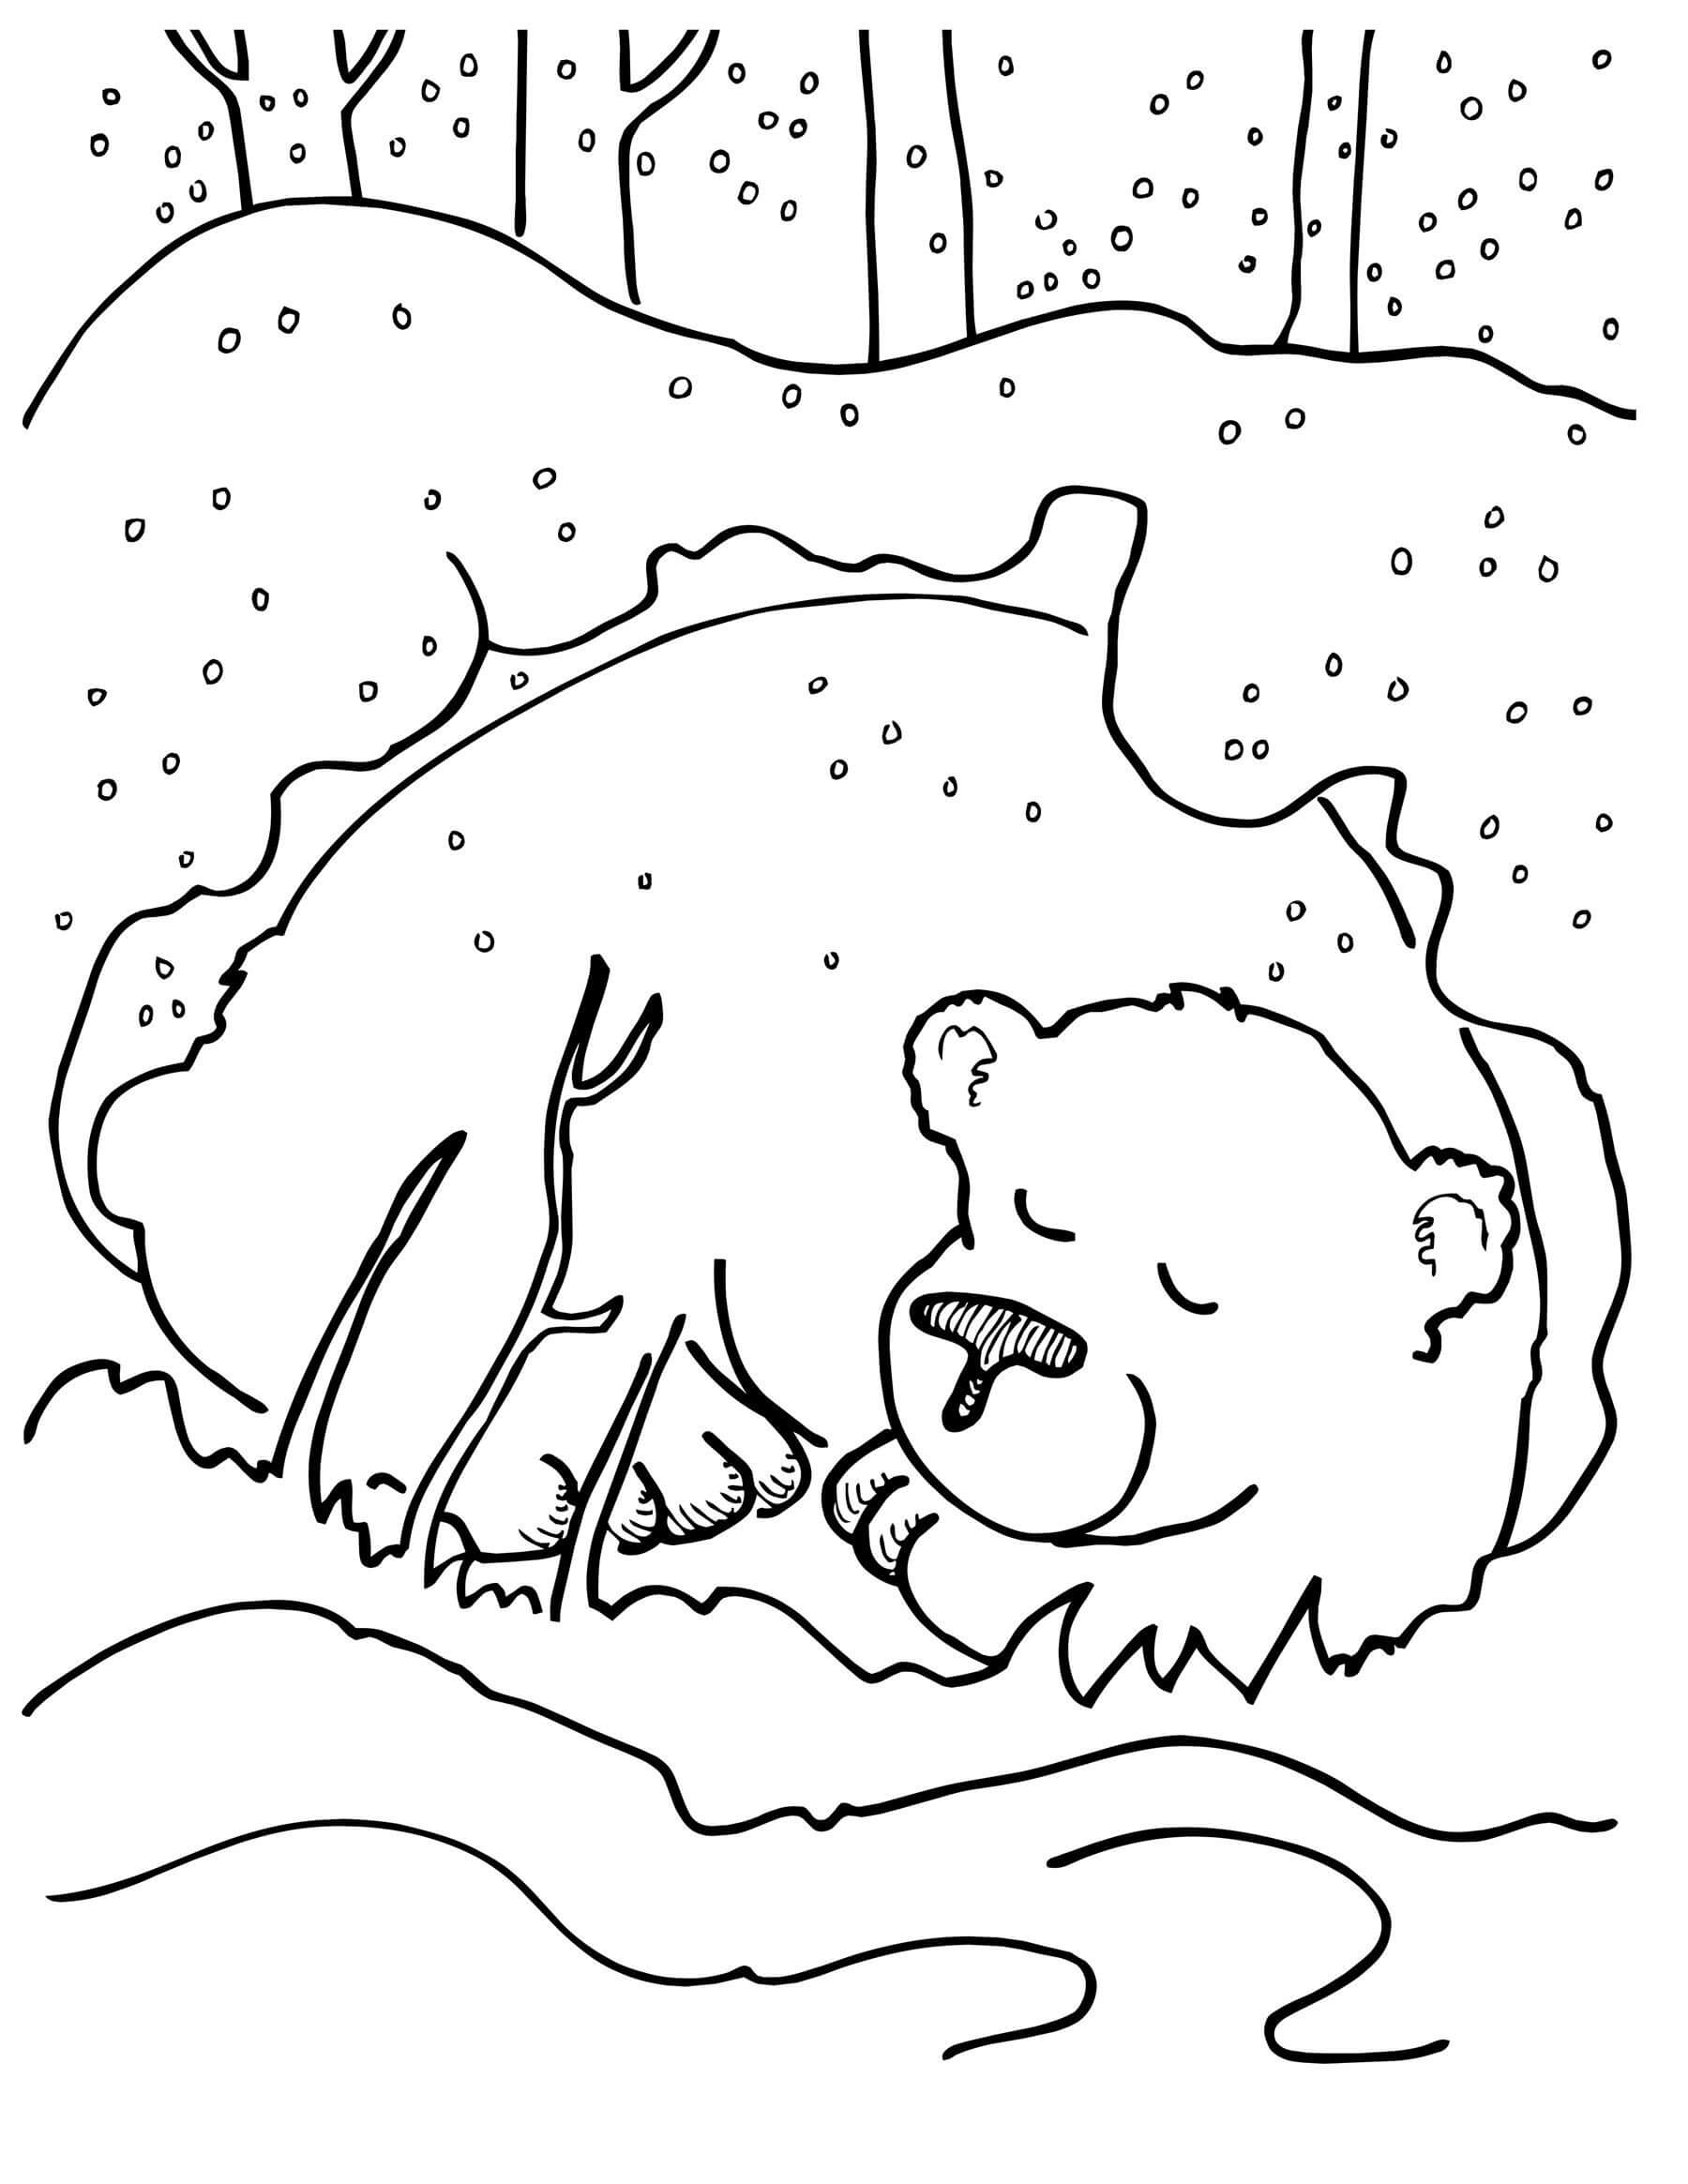 Медведь в берлоге раскраска для детей. Медведь зимой раскраска для детей. Раскраска мишка в берлоге для детей. Медведь раскраска для детей. В берлоге дремлет